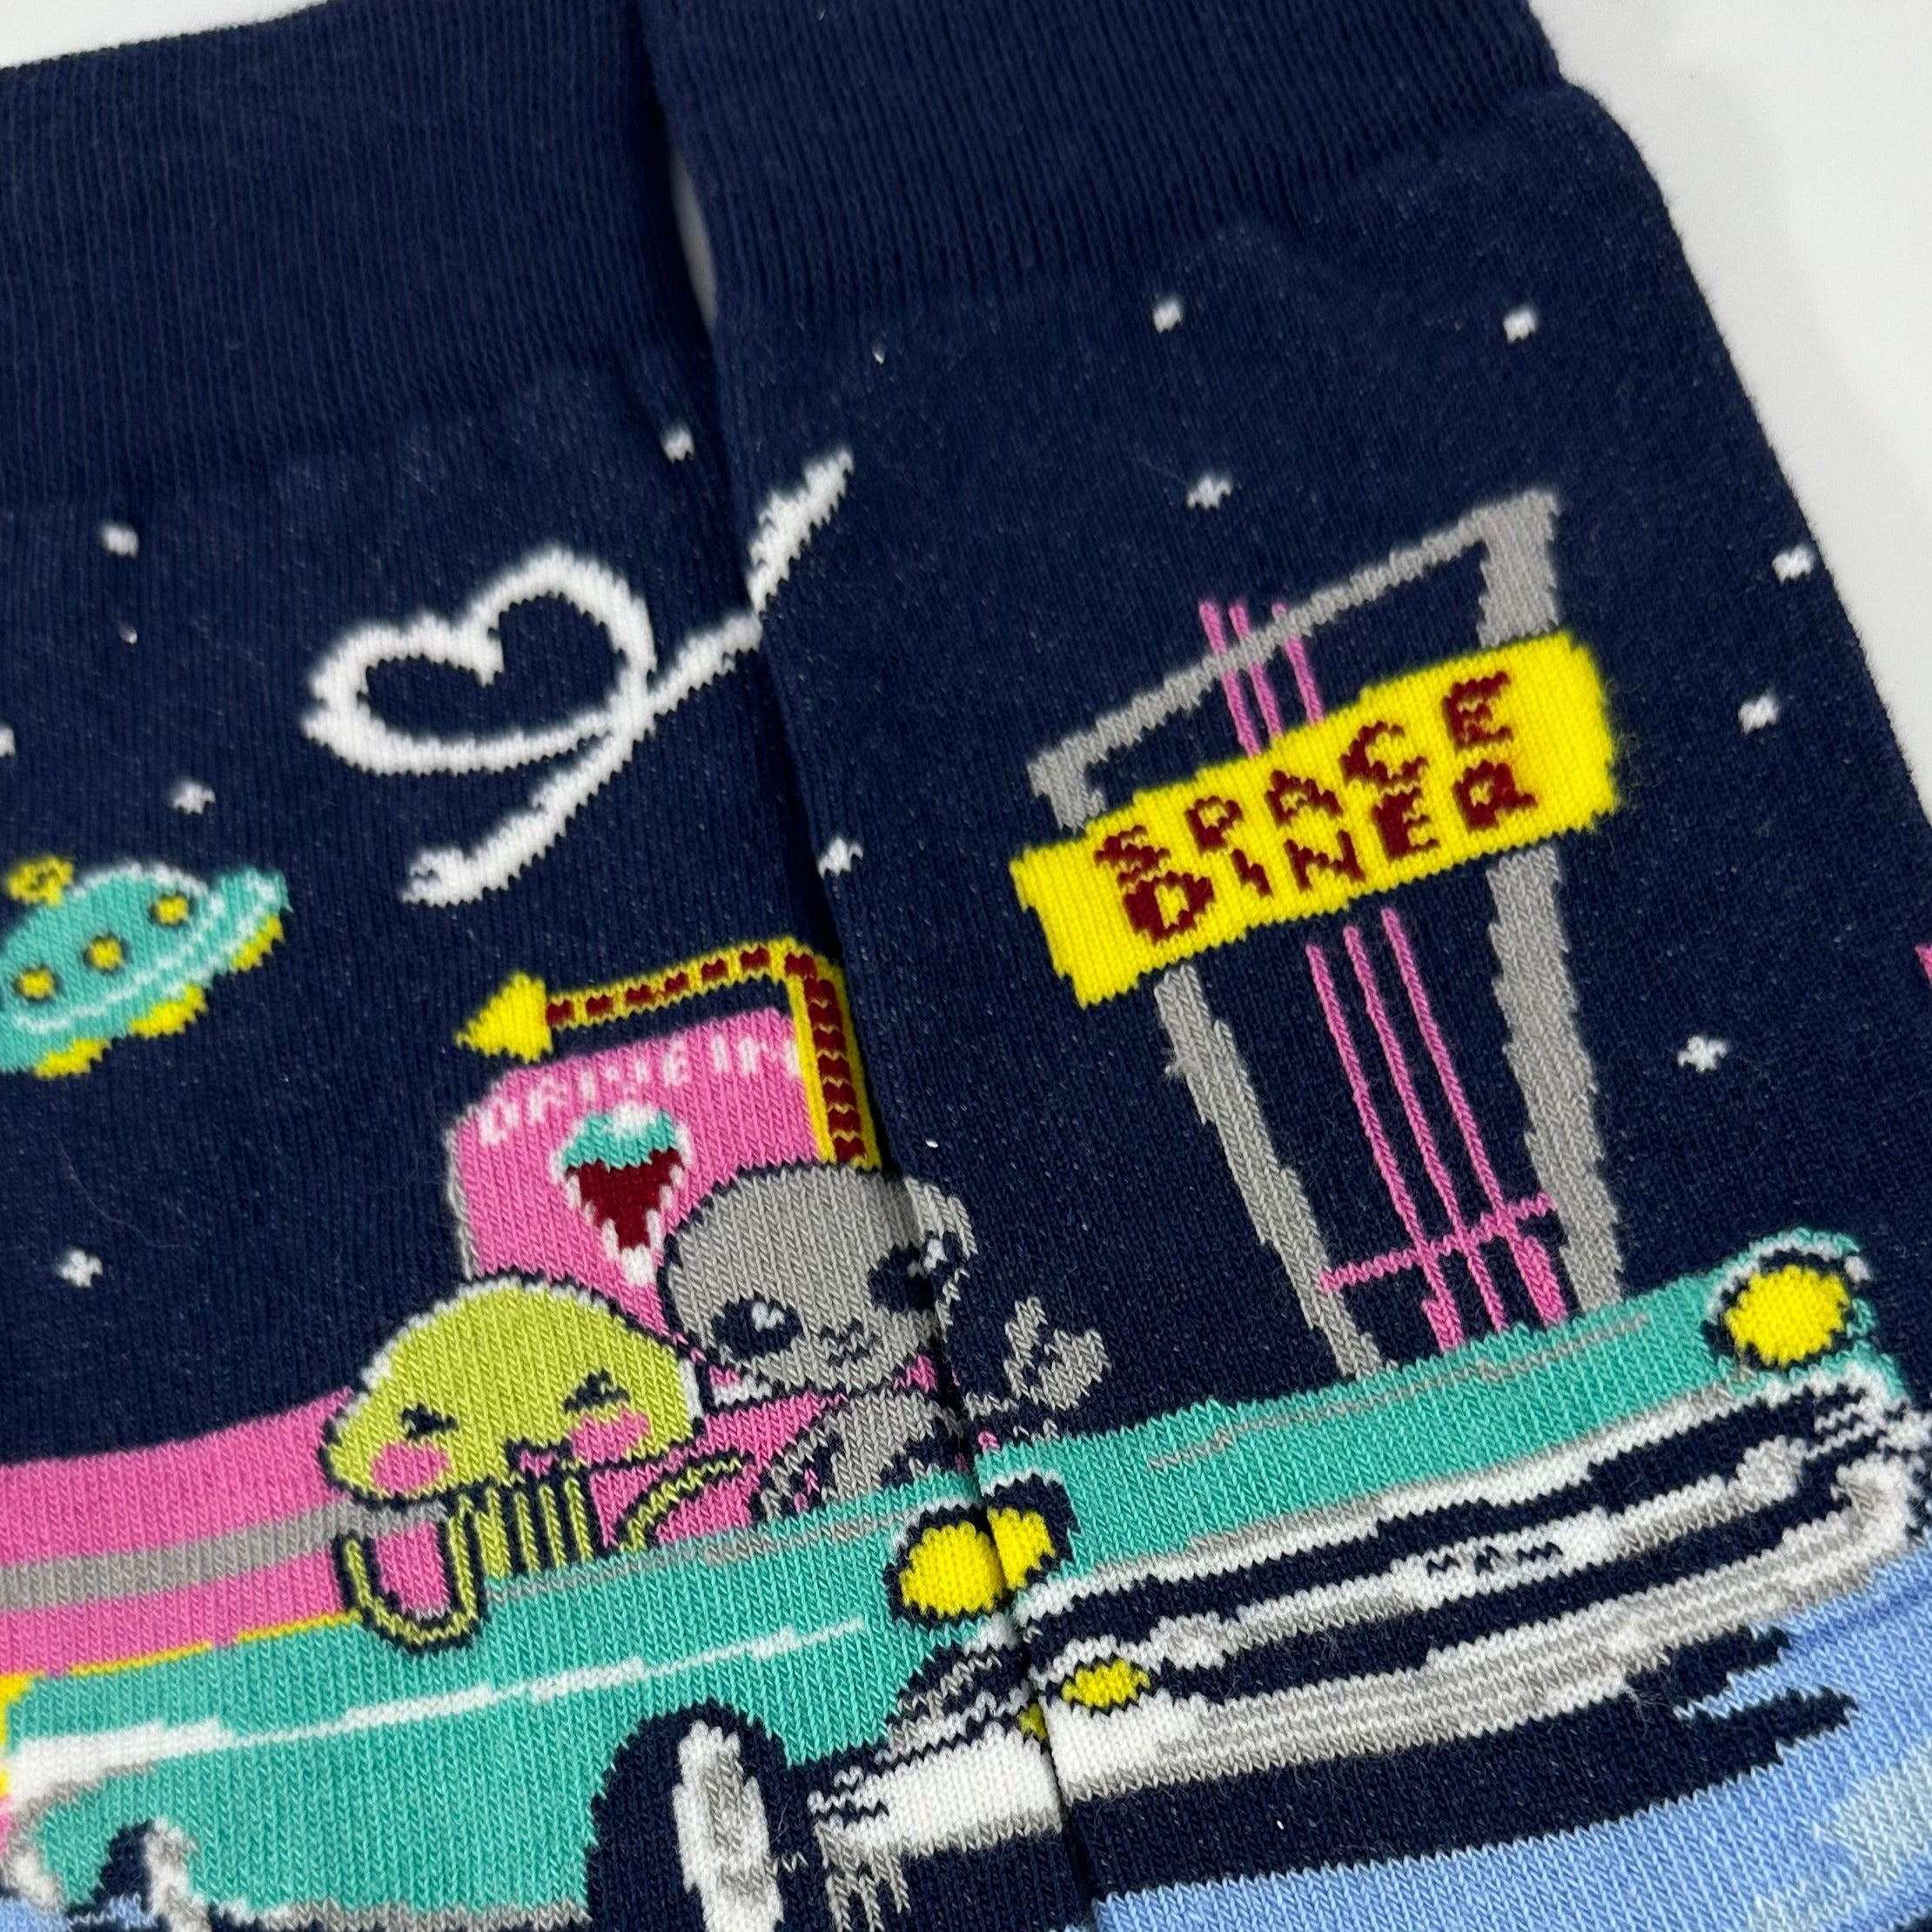 Alien Dinner Date Socks from the Sock Panda (Adult Medium)